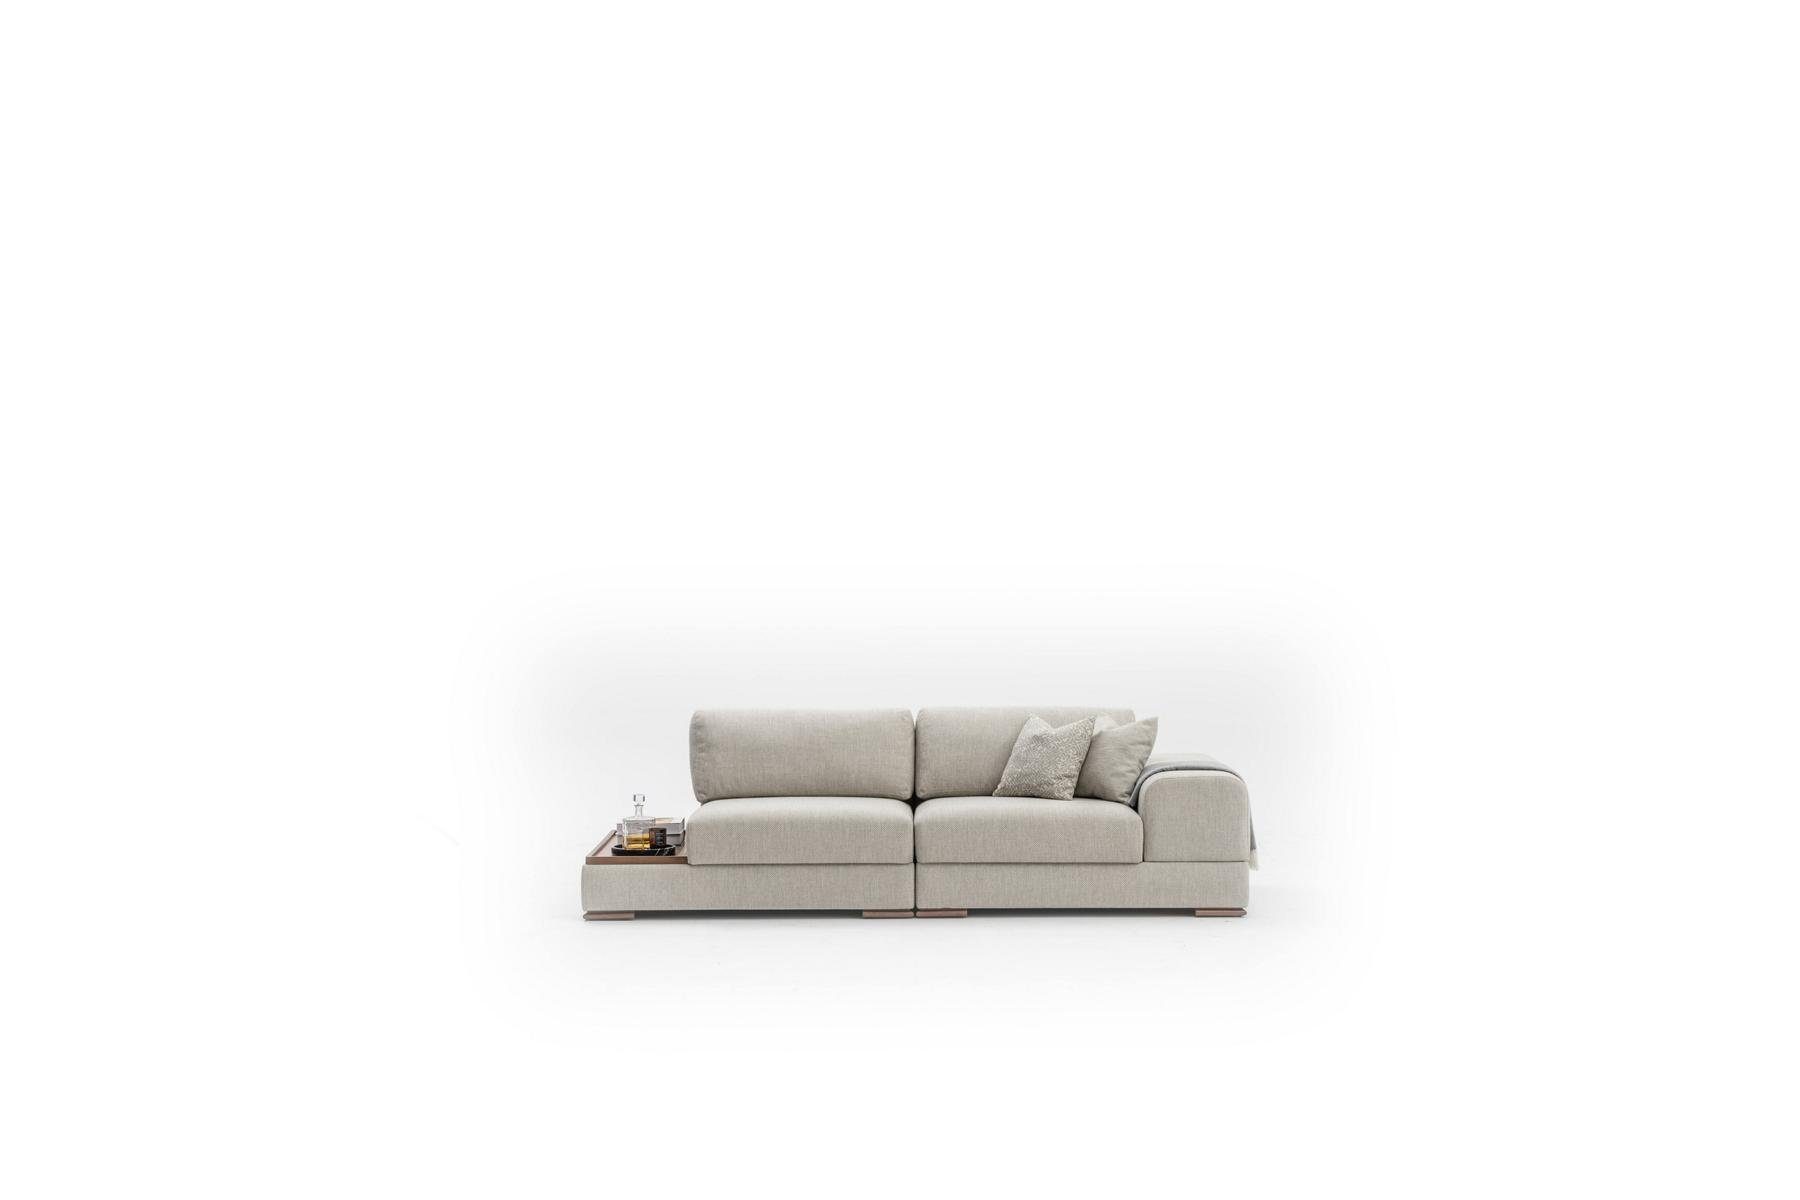 260cm in Design Made Neu, Sofa Wohnzimmer 3-Sitzer 3 Luxus Big JVmoebel Sitzer Europe Sofas